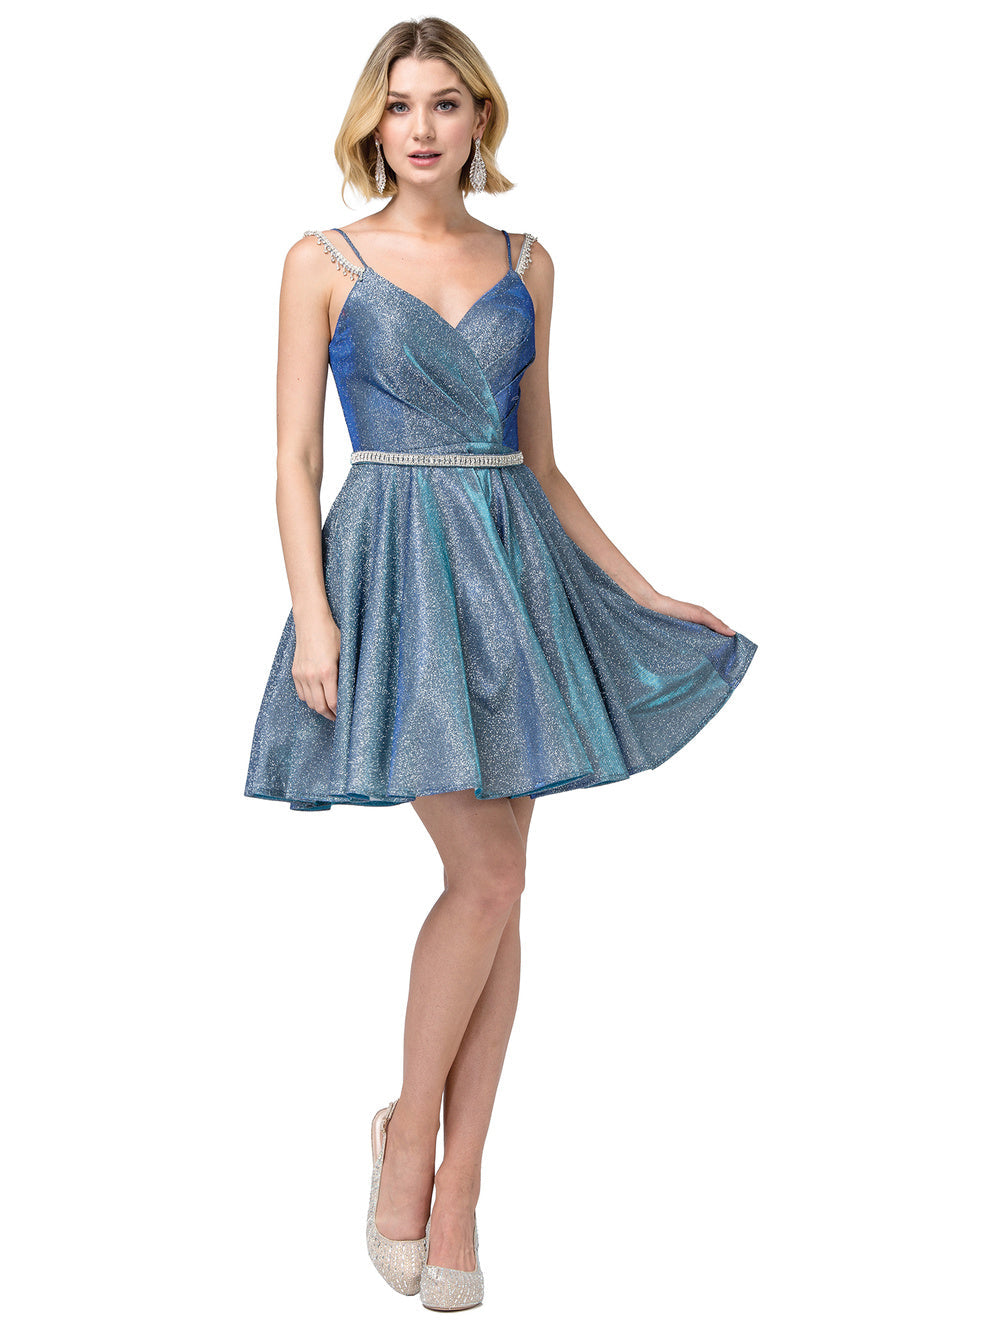 CD 0188 Size 12 Short Shimmer Blush Fit & Flare Cocktail Dress